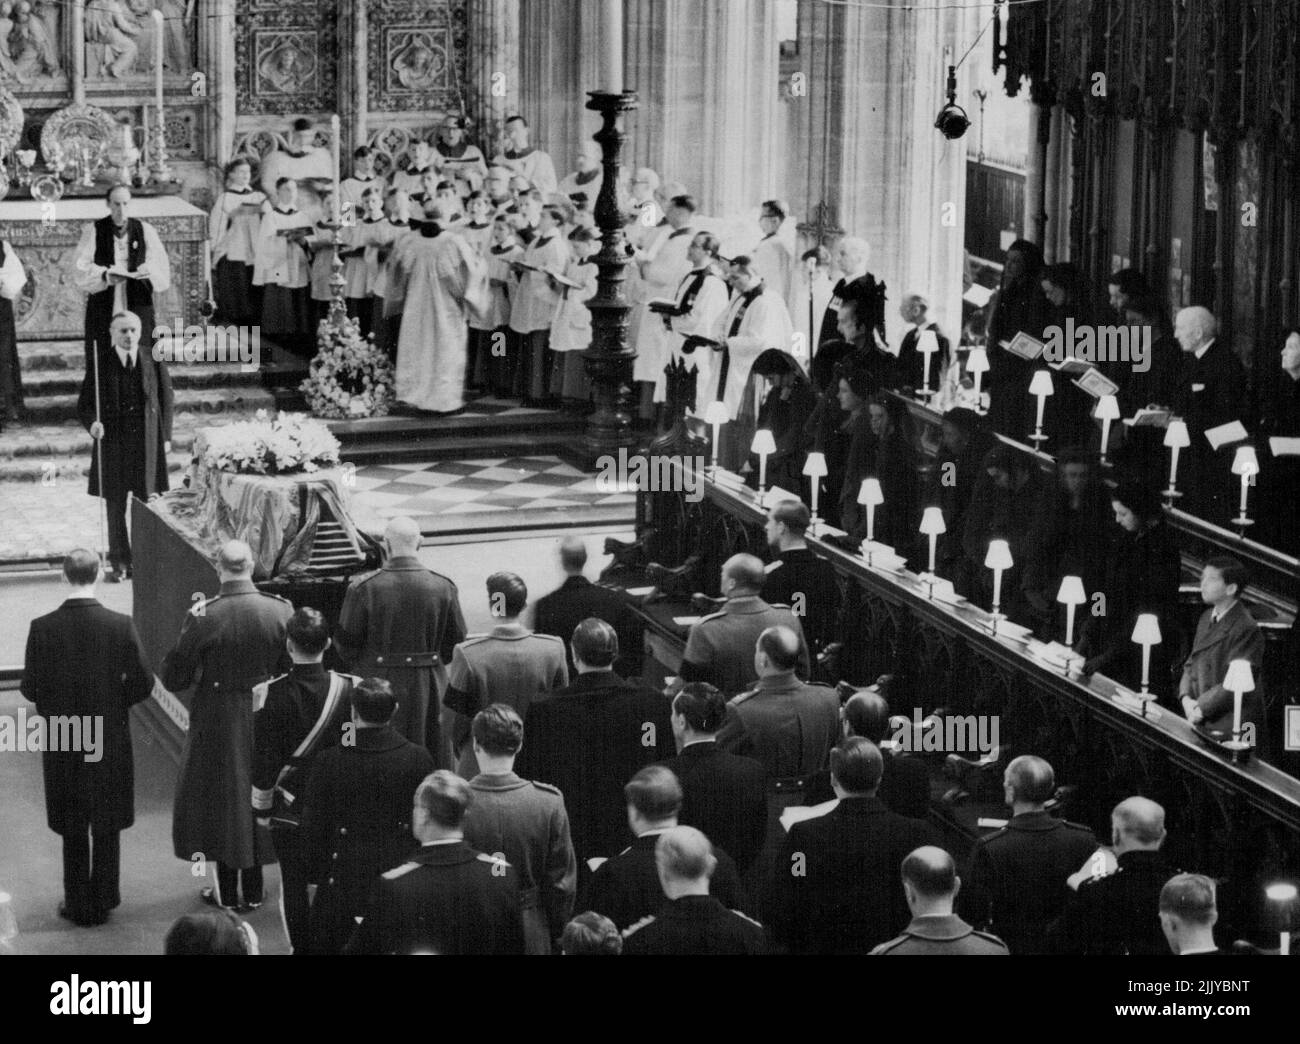 Derecha - izquierda a derecha - la Reina; la Reina Isabel la Reina Madre; la Princesa Margarita; los Príncipes Reales; la Duquesa de Gloucester; la Duquesa de Kent; su hija, la Princesa Alexandra; y el hijo menor de la Duquesa, el Príncipe Miguel. Inmediatamente detrás del ataúd en la imagen se encuentran - de izquierda a derecha - el duque de Kent; el duque de Gloucester; el conde de Athlone (hermano de la reina María), el duque de Windsor; y el duque de Edimburgo (extremo derecho). Detrás de ellos se encuentran el rey Hussein de Jordania, el rey Baudouin de los belgas y el príncipe heredero Olaf de Noruega. 31 de marzo de 1953. Foto de stock